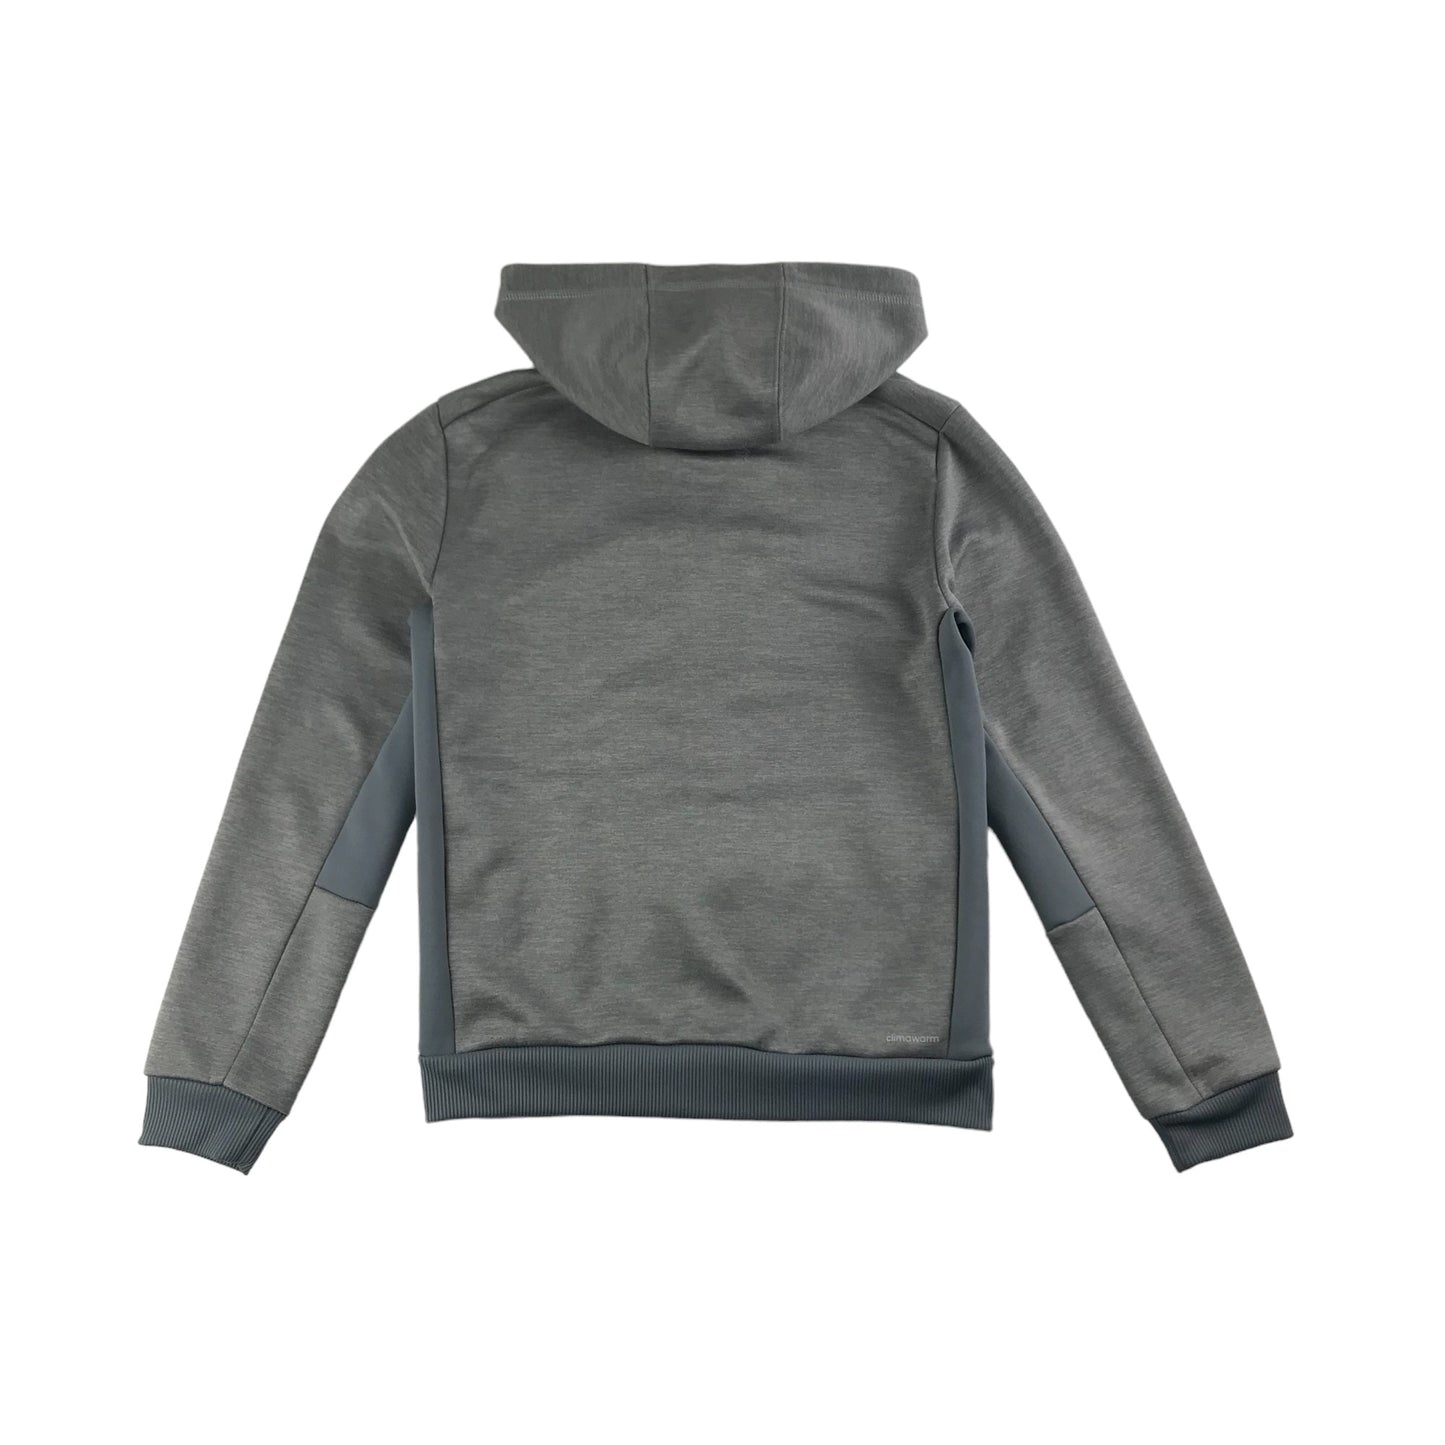 Adidas Hoodie Age 10-12 Grey Sporty Full Zipper